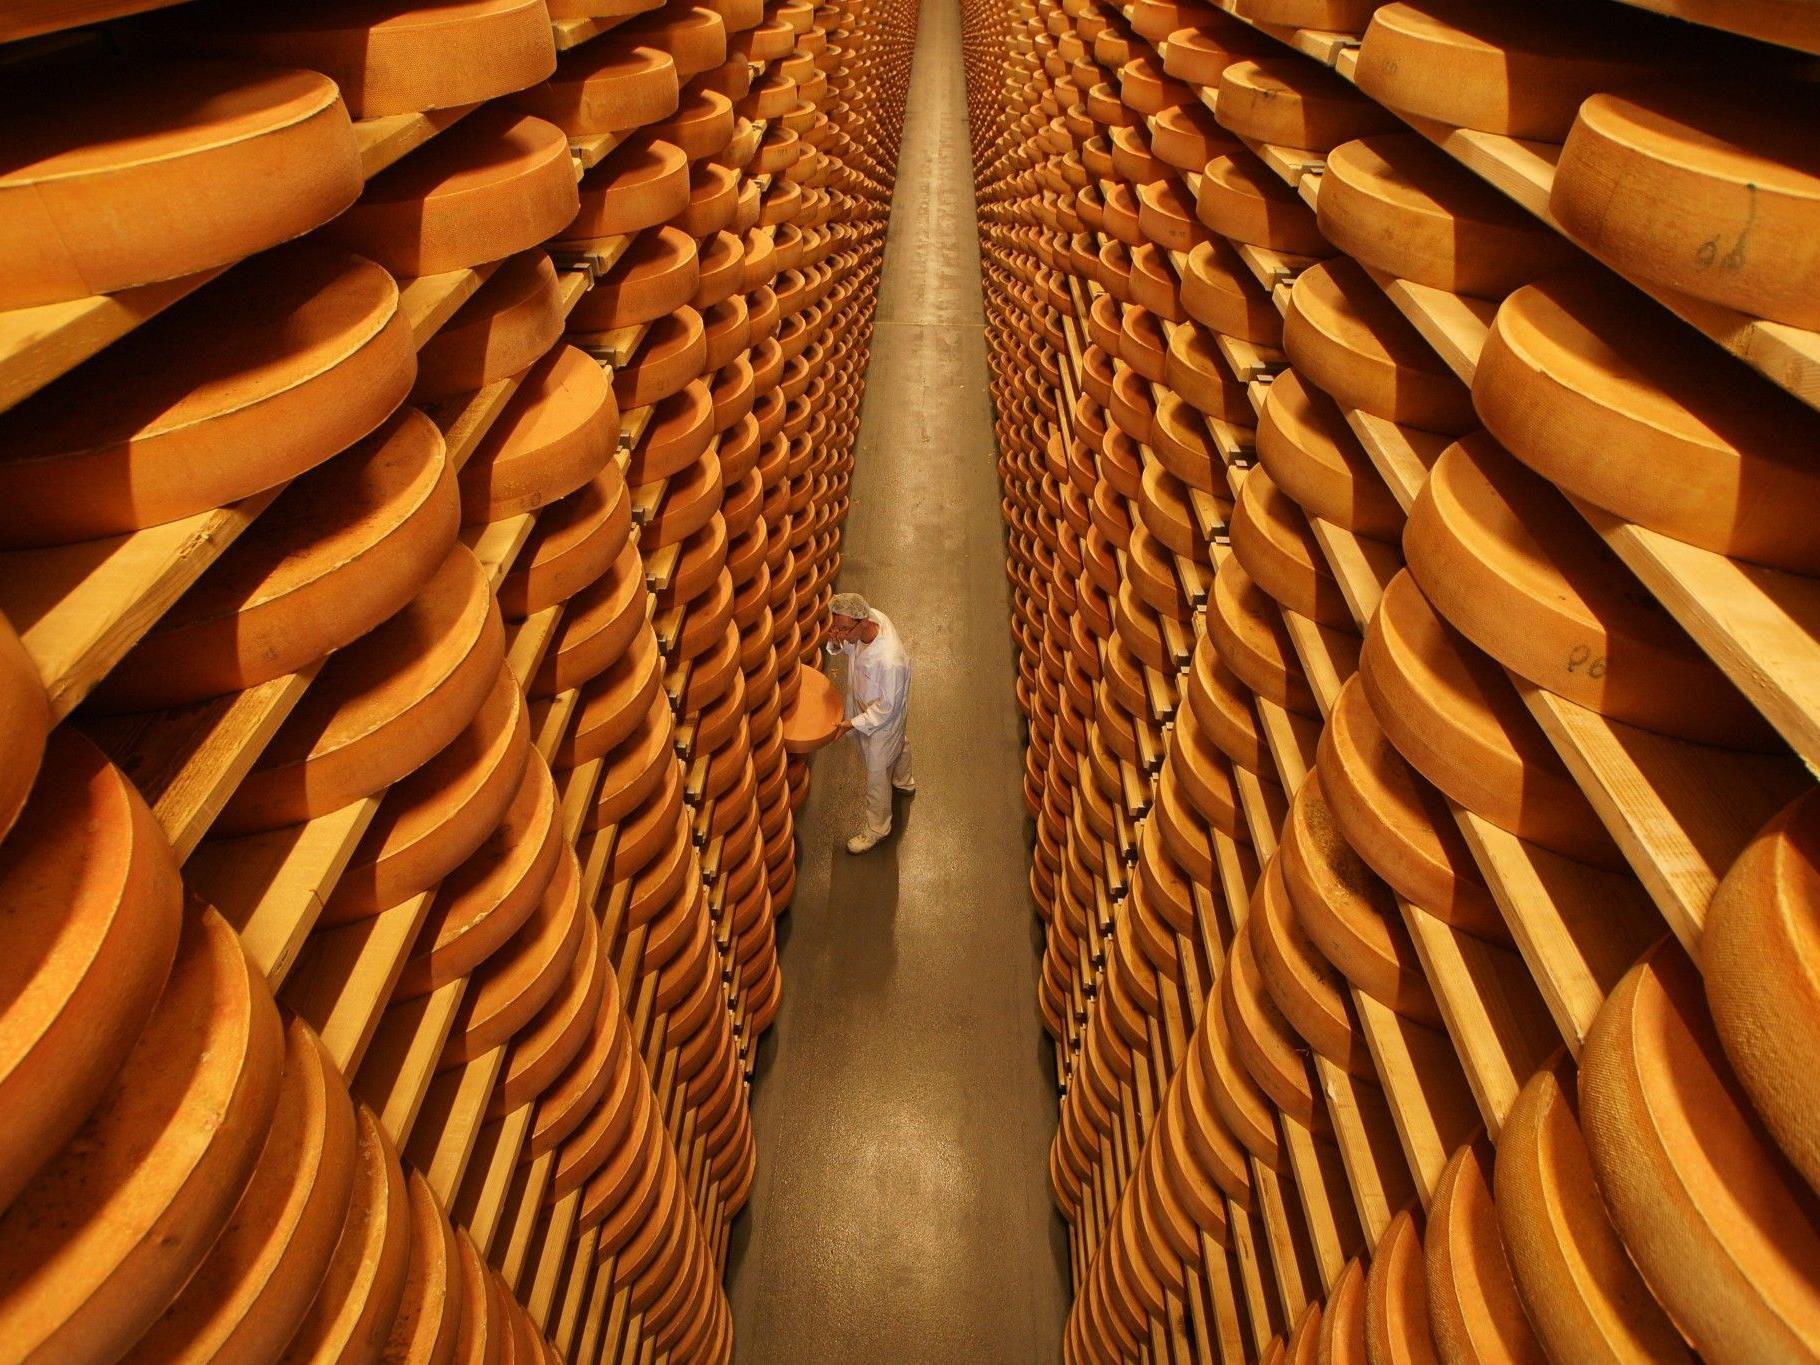 Ist Überdüngung schuld an den Qualitätsproblemen des Bregenzerwälder Käse?